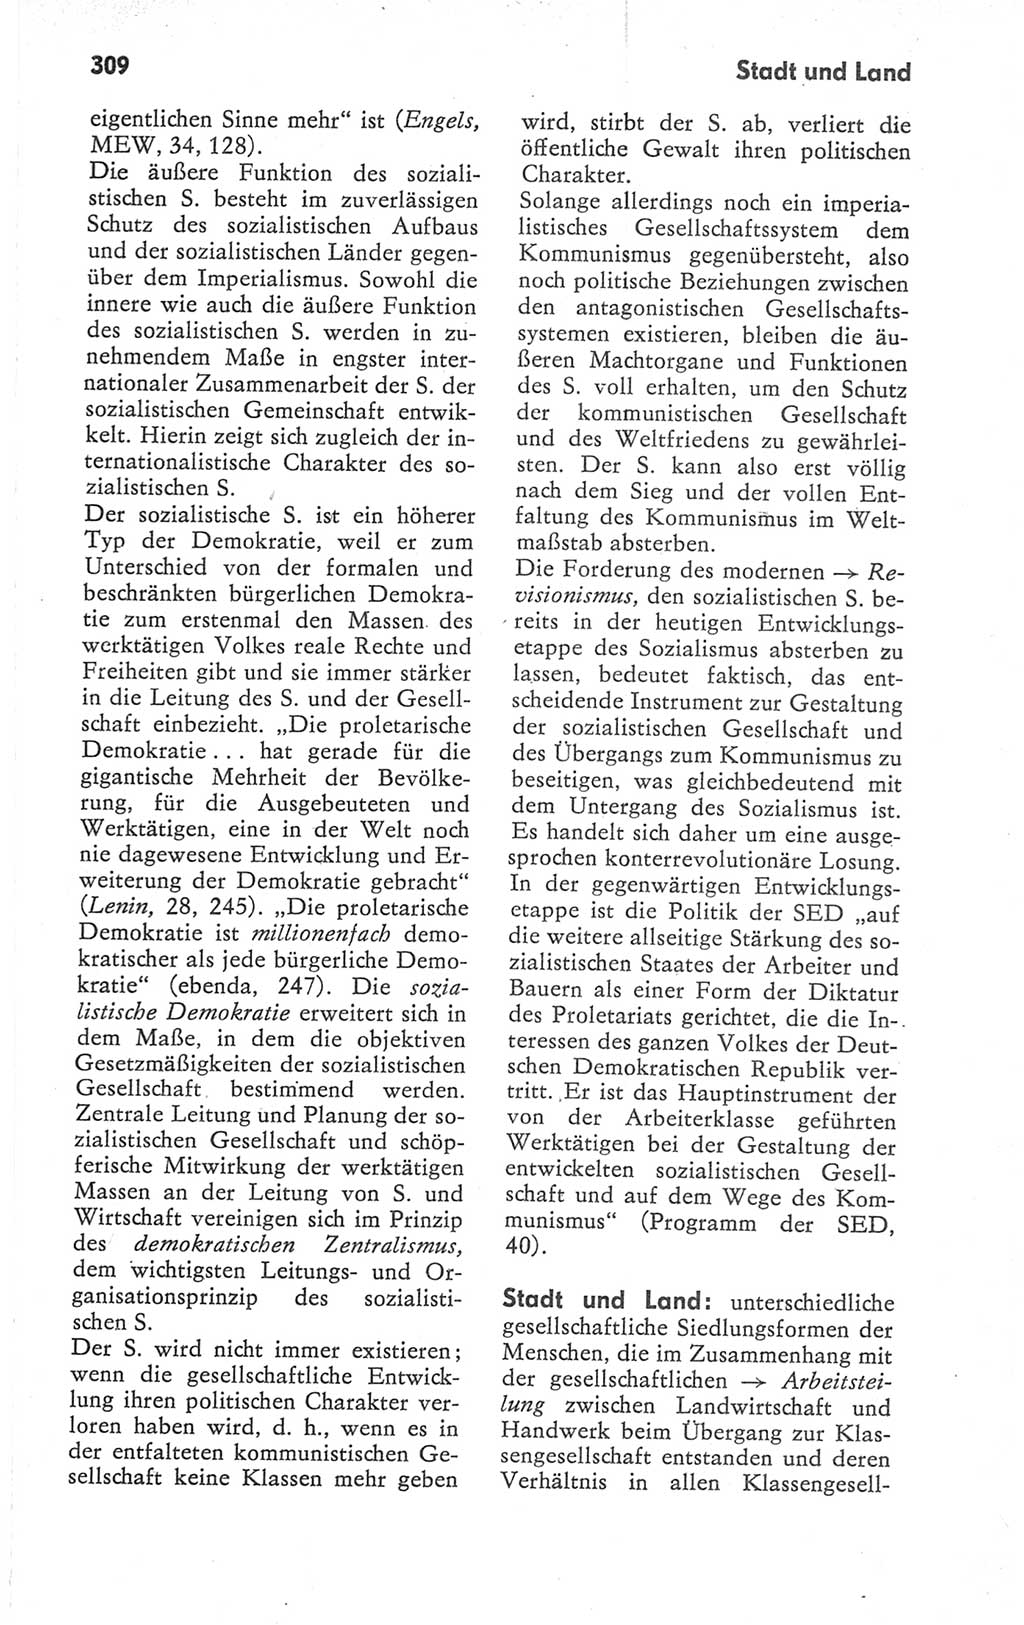 Kleines Wörterbuch der marxistisch-leninistischen Philosophie [Deutsche Demokratische Republik (DDR)] 1979, Seite 309 (Kl. Wb. ML Phil. DDR 1979, S. 309)